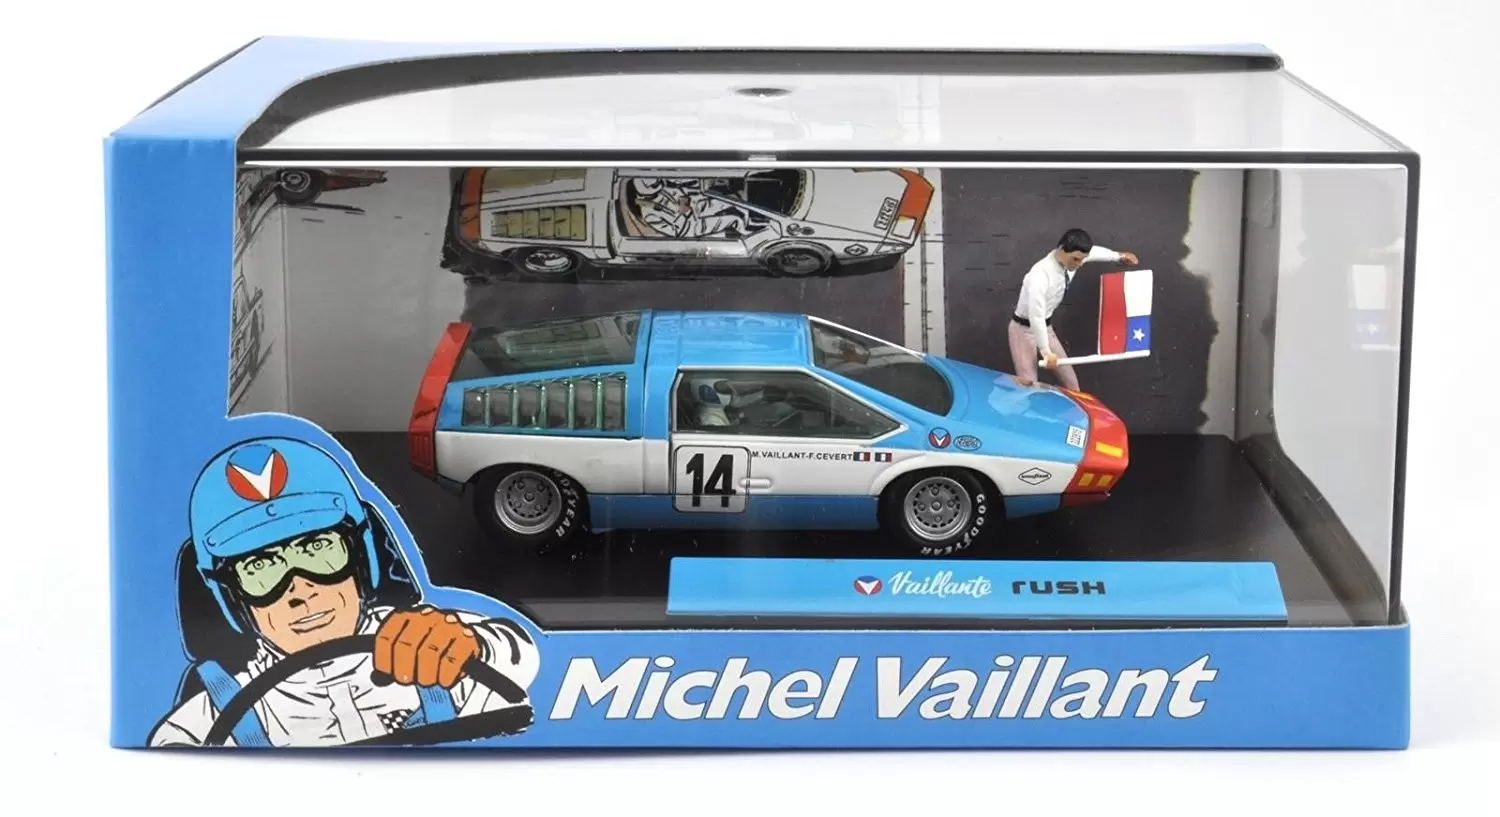 Les voitures de Michel Vaillant - Vaillante Rush